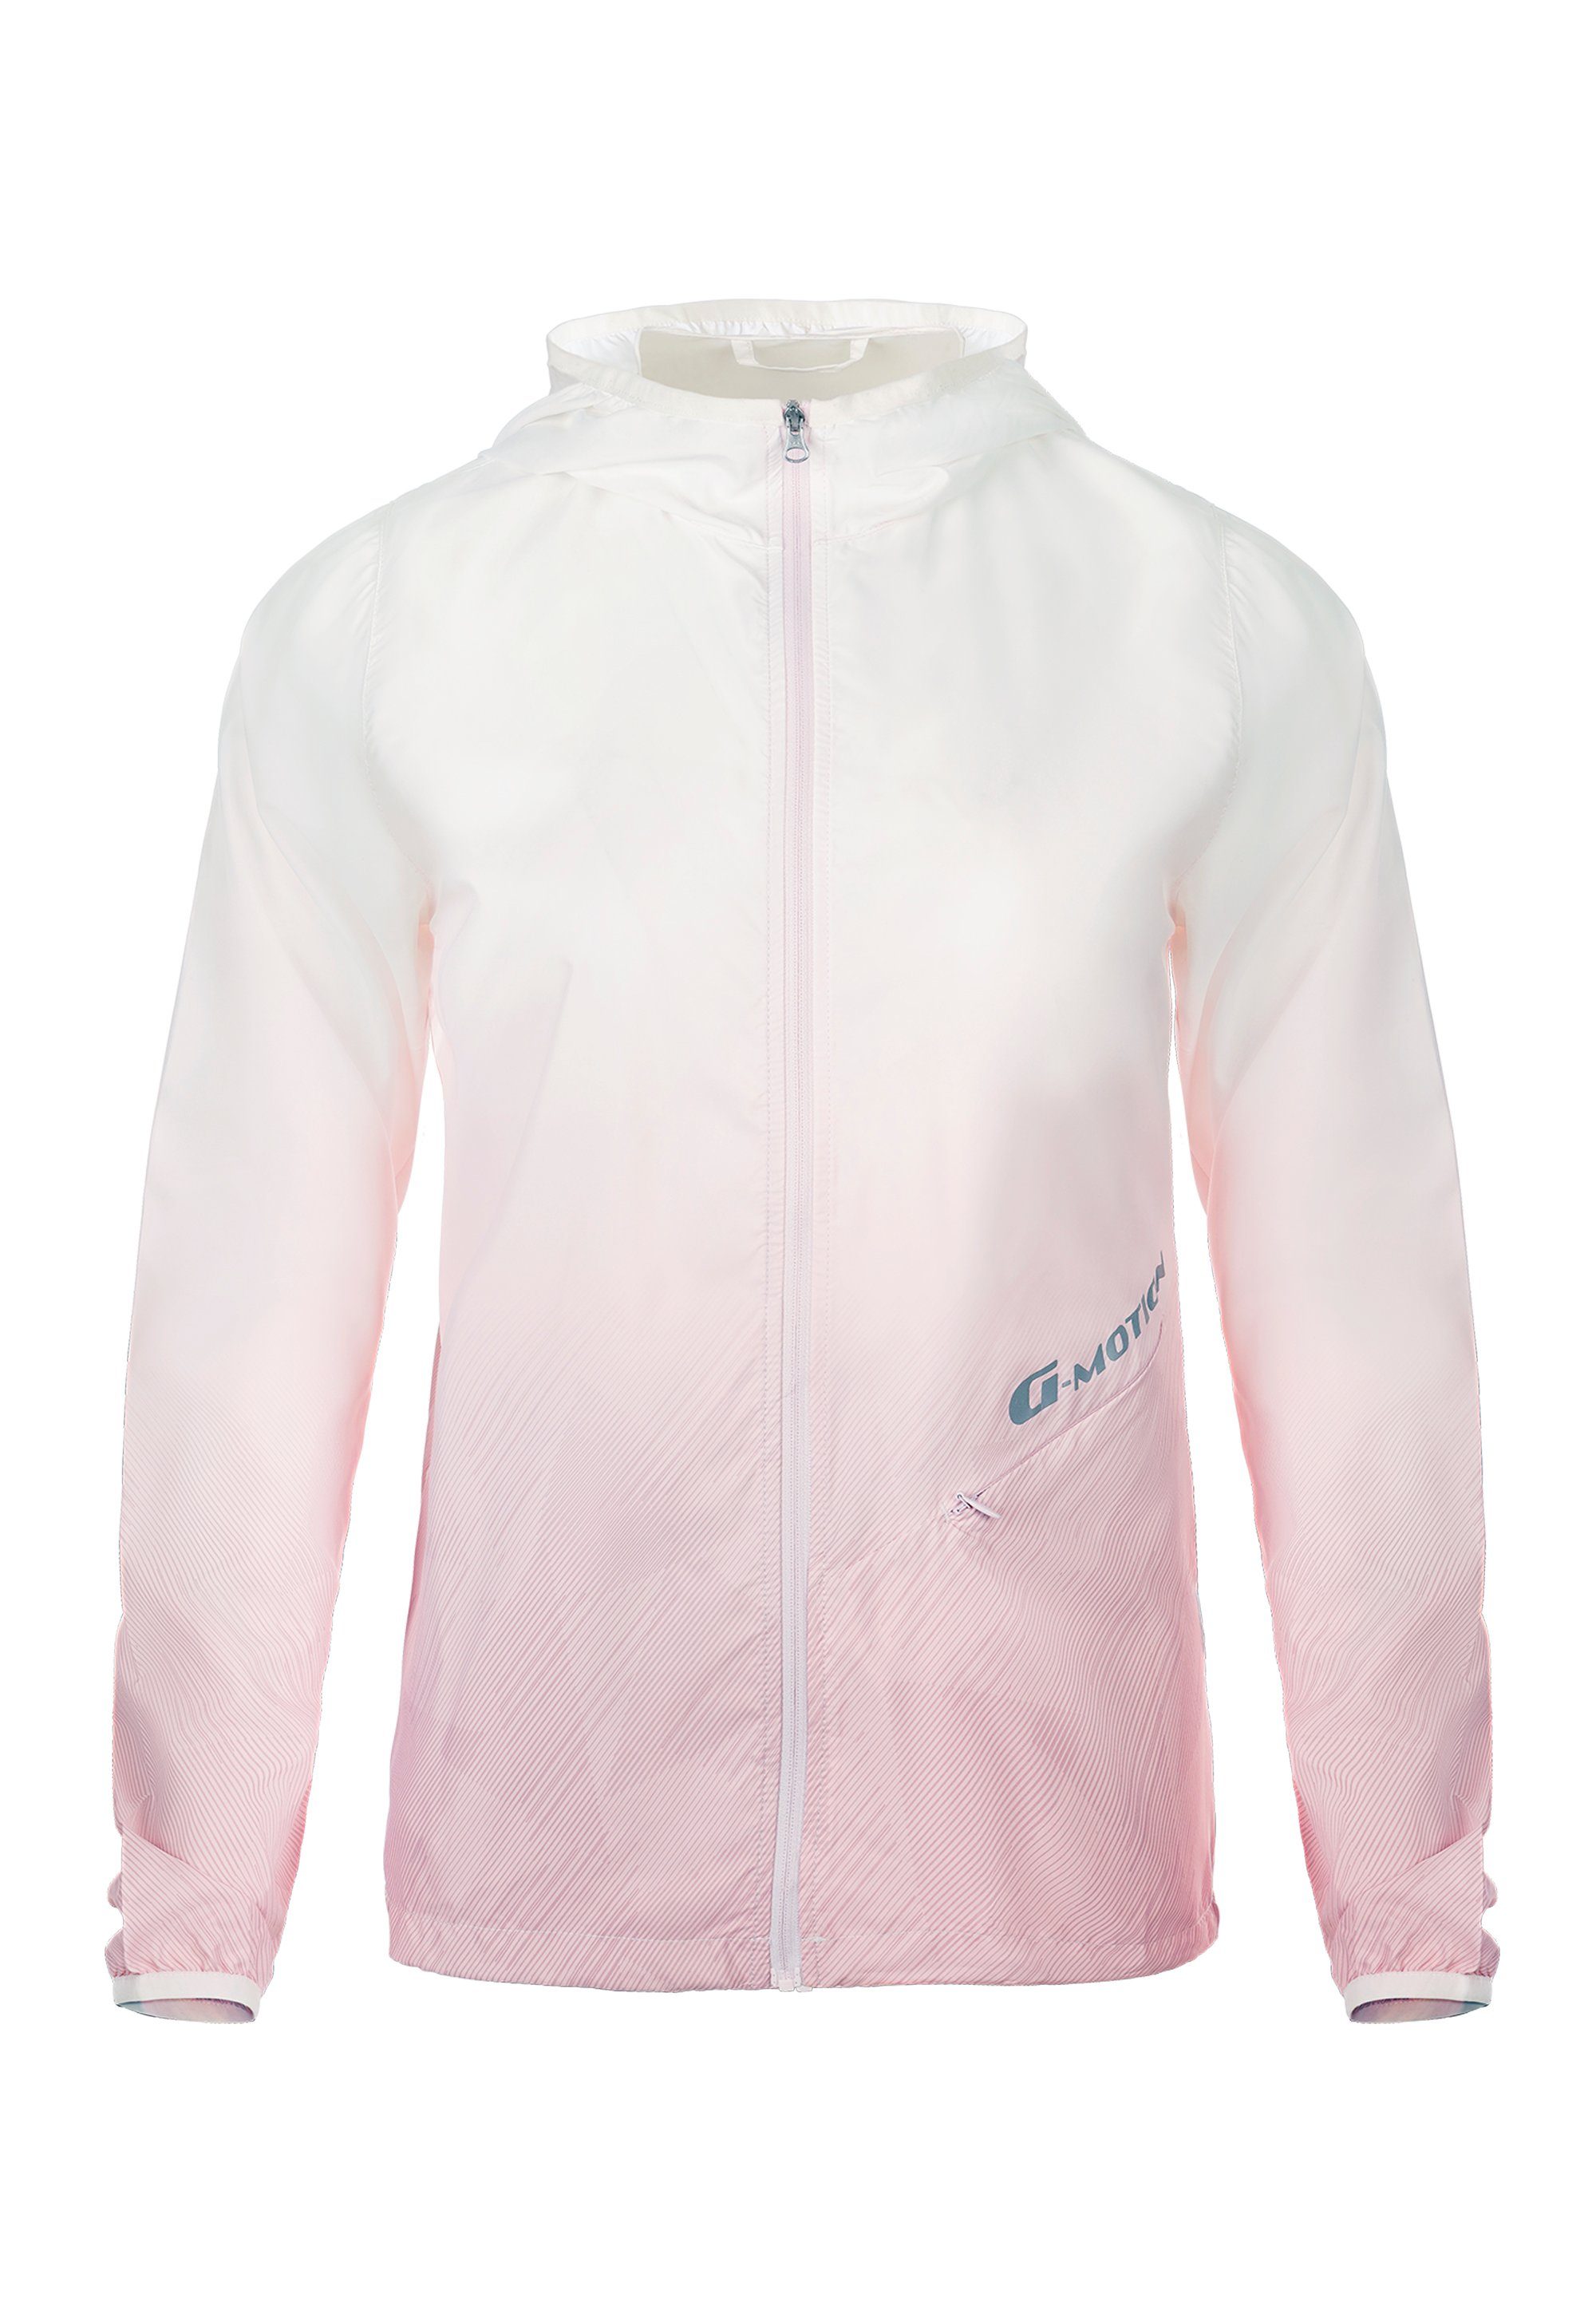 GIORDANO Outdoorjacke G mi pink-weiß 50+ Motion UV-Schutzfaktor